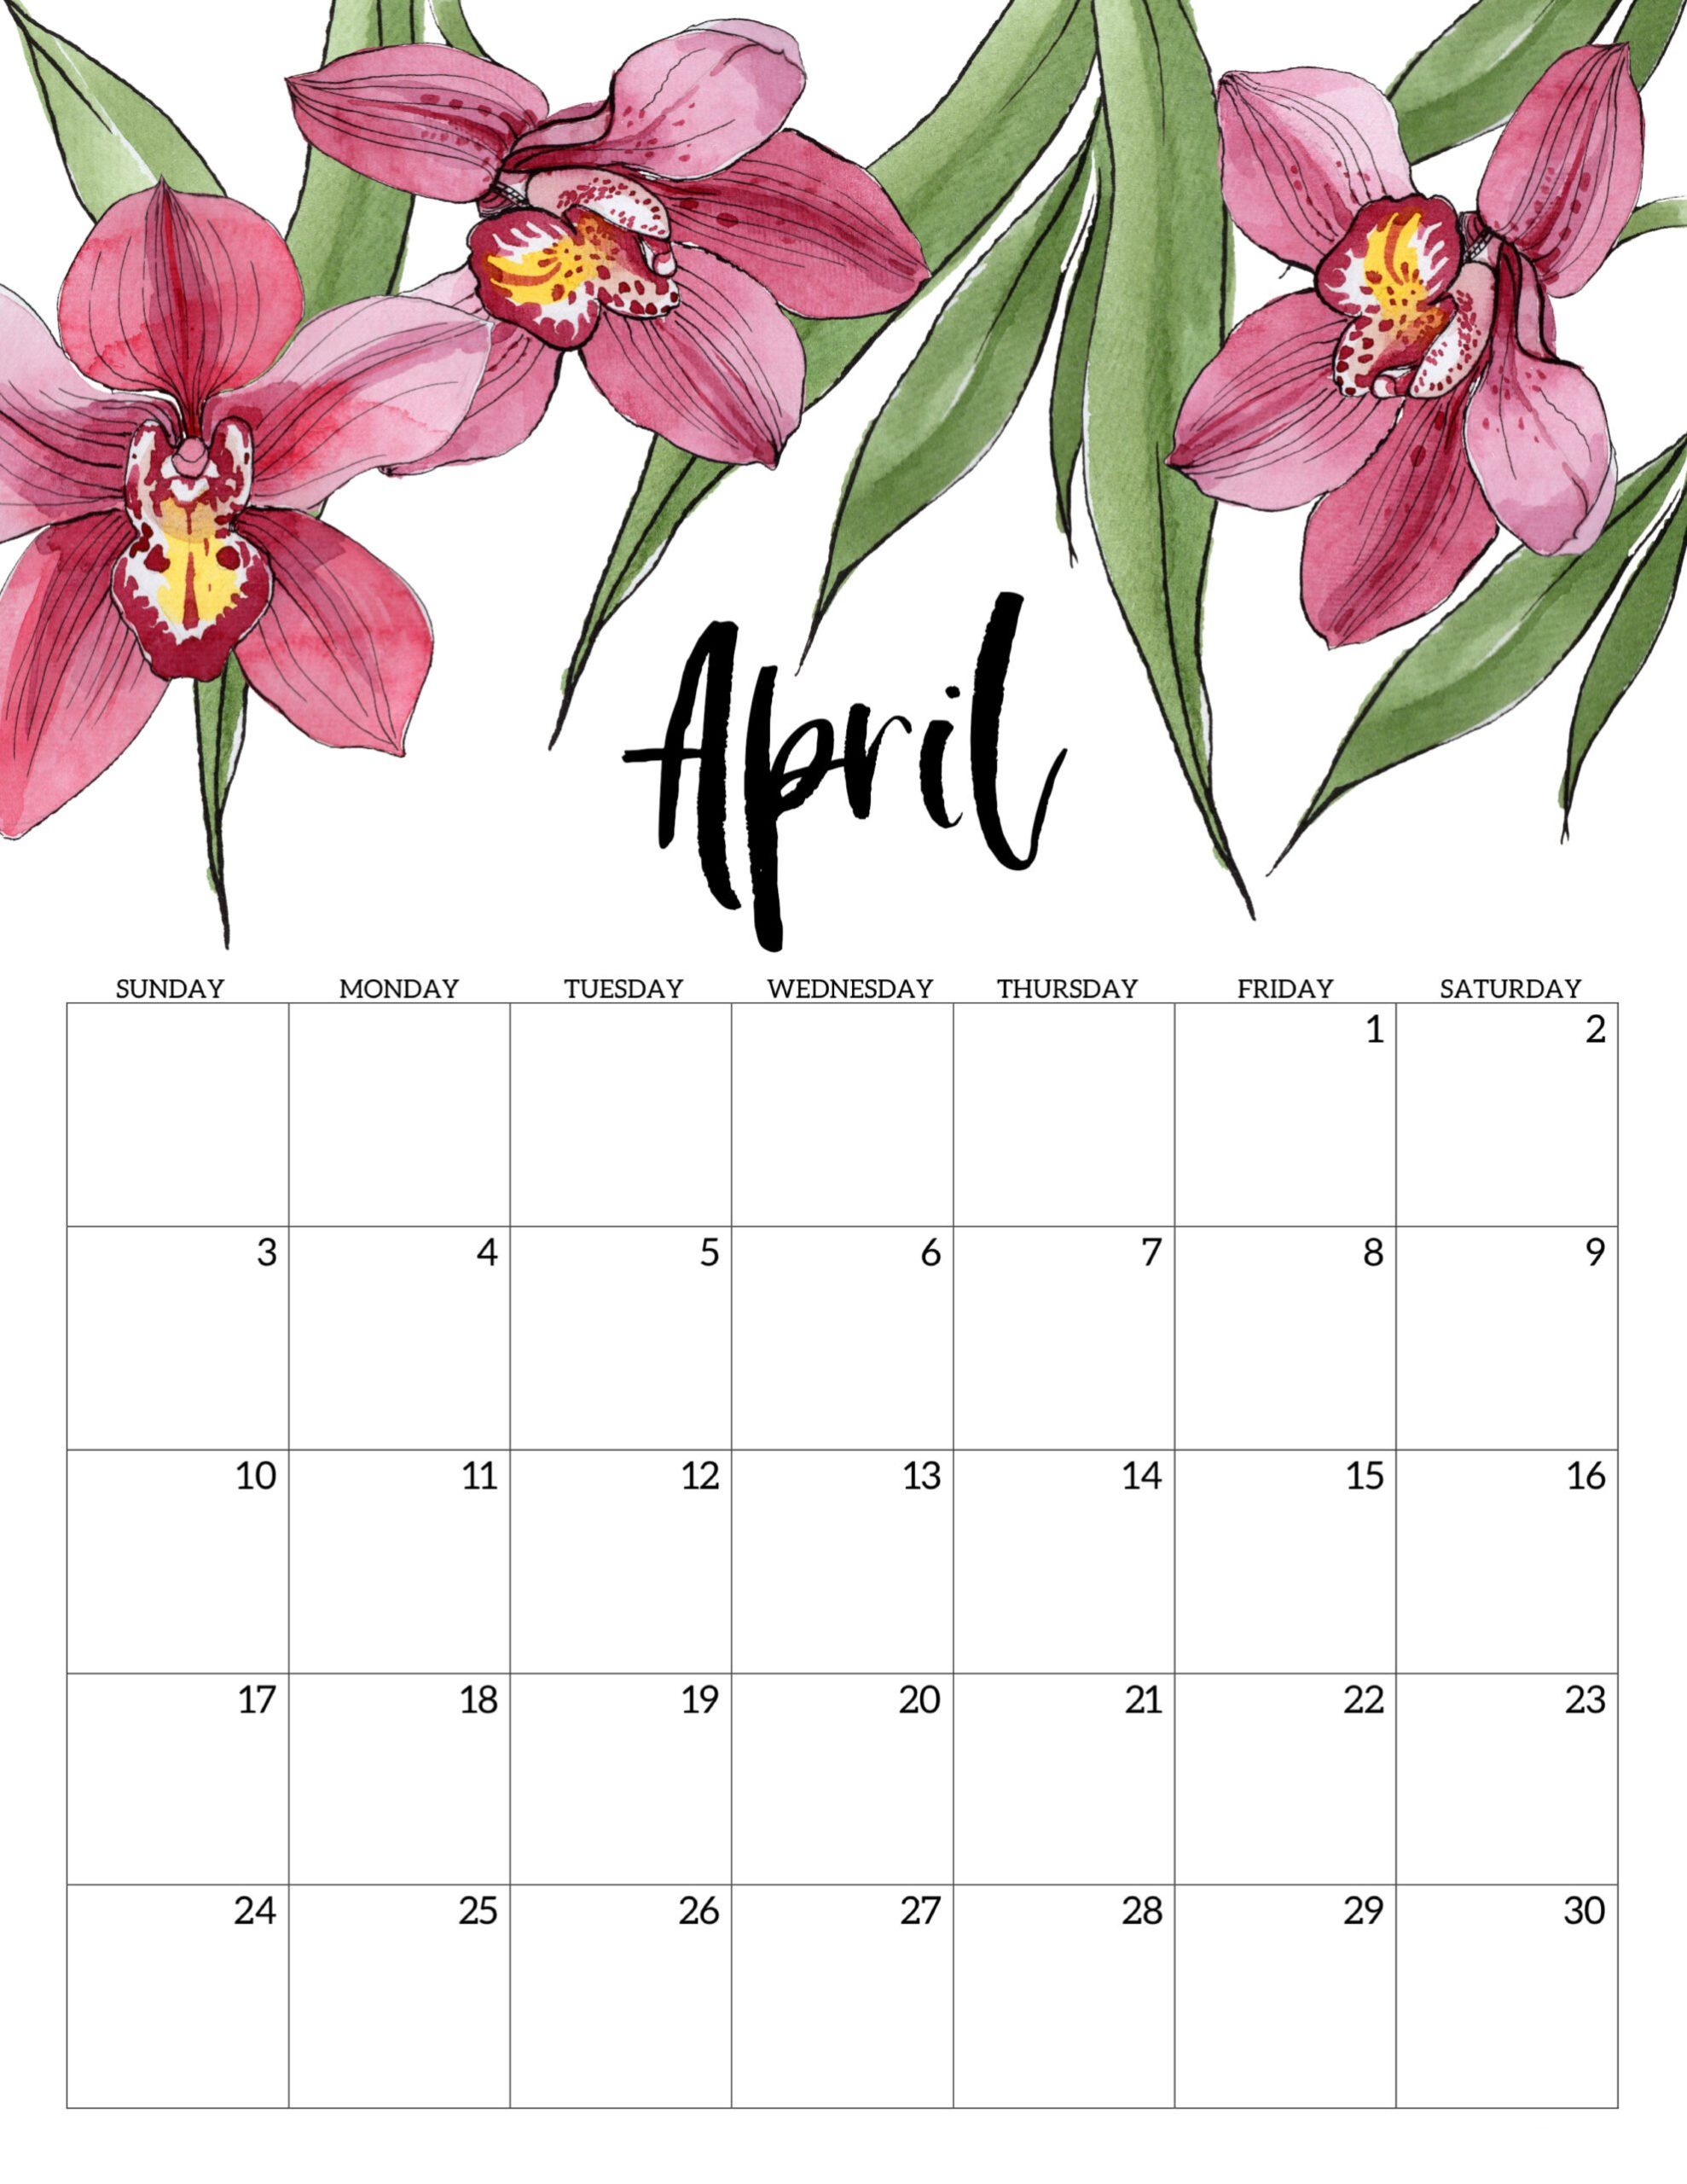 Calendario 2022 Floral Abril 2